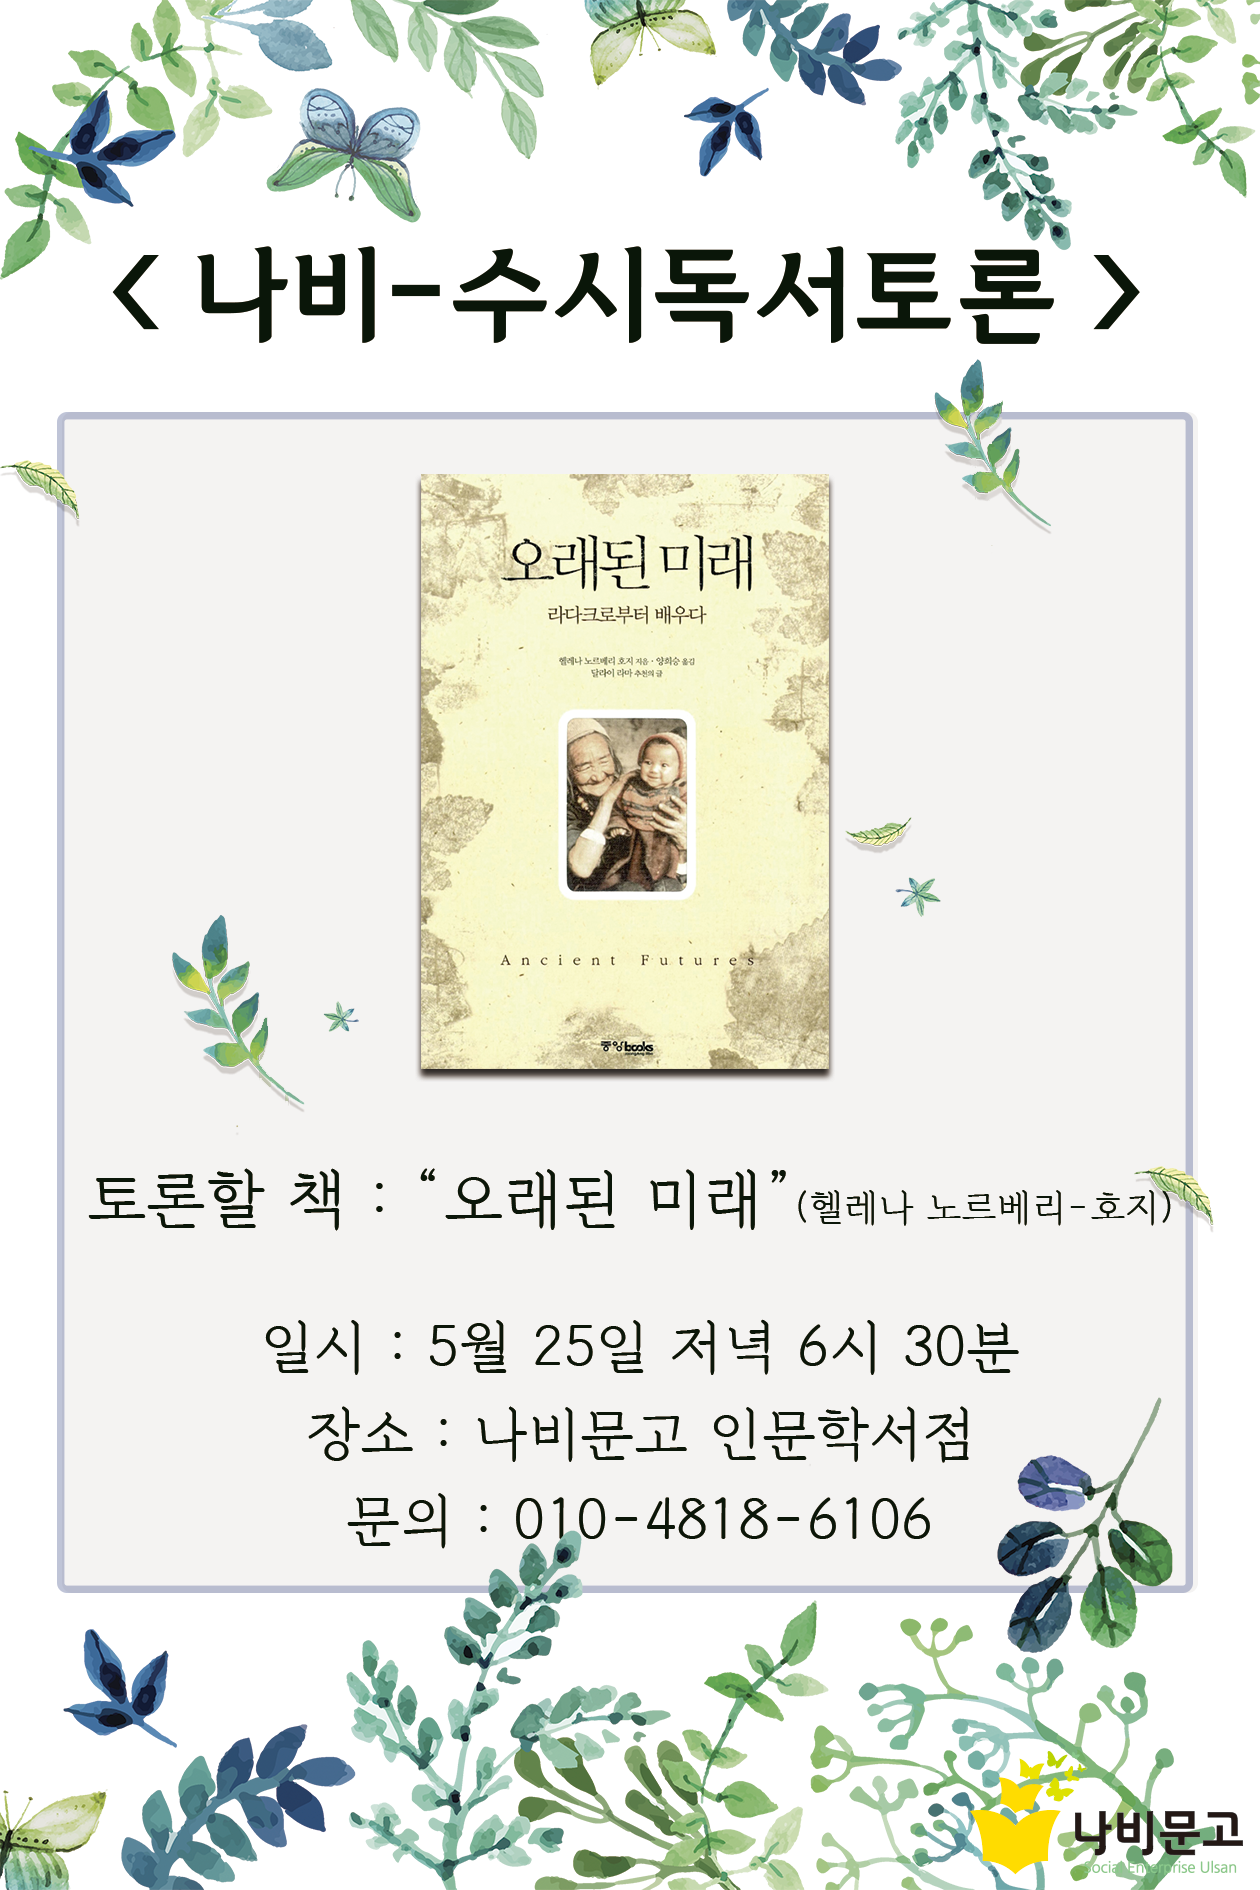 나비-수시독서토론(5월).png